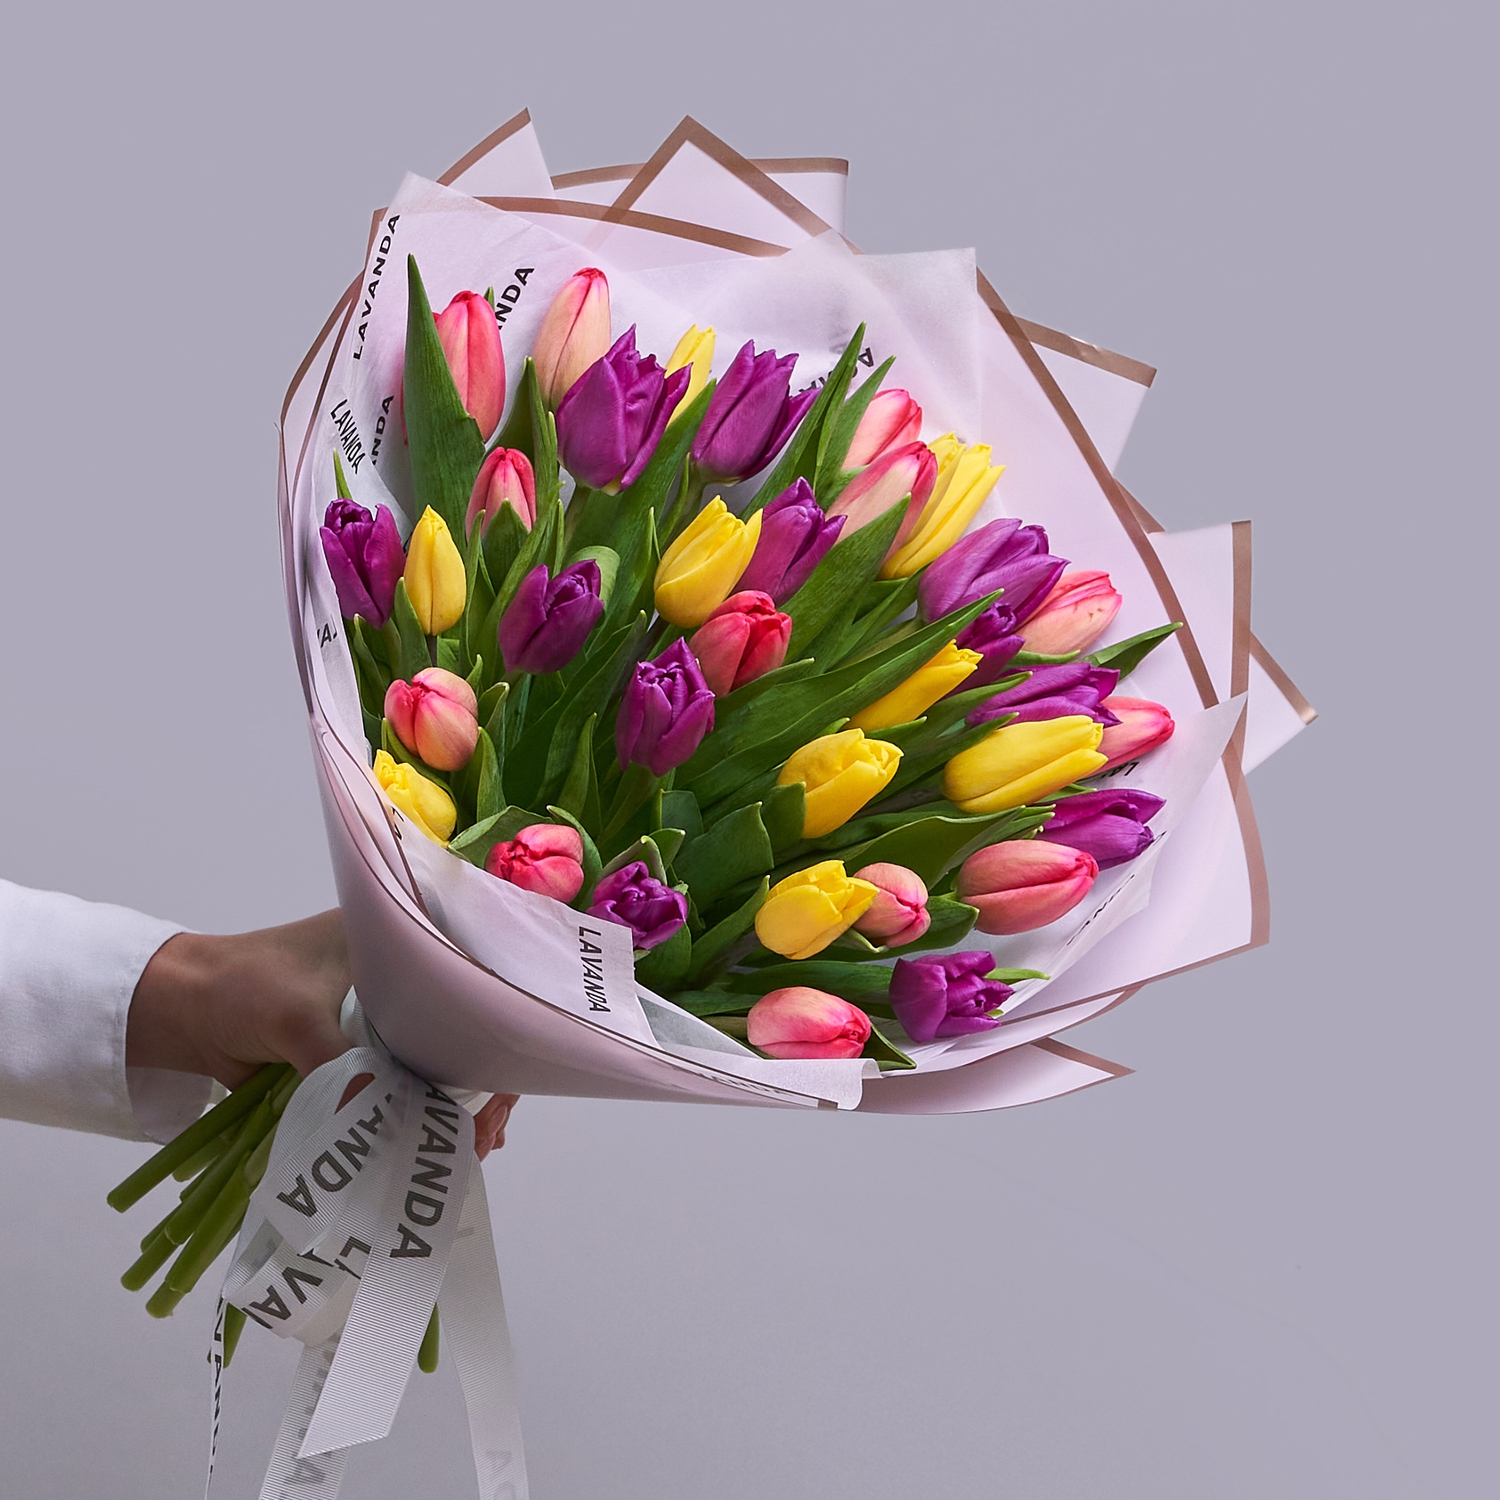 35 ярких тюльпанов в стильной упаковке